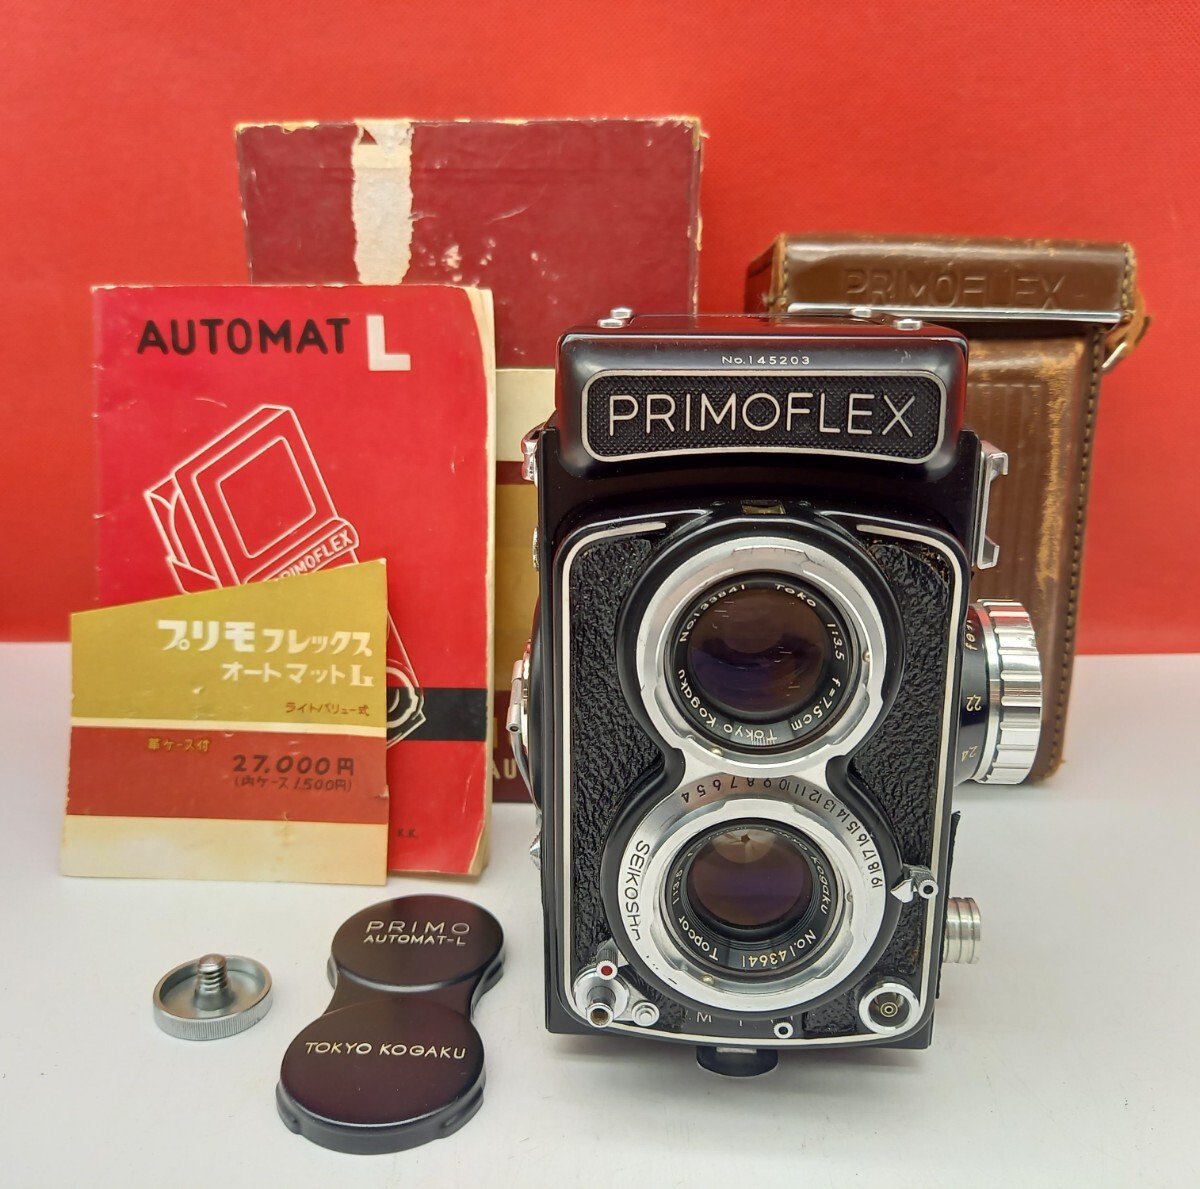 ■ PRIMOFLEX AUTOMAT L オートマット TOPCOR 7.5cm Ｆ3.5 二眼レフカメラ フィルムカメラ プリモフレックスの画像1